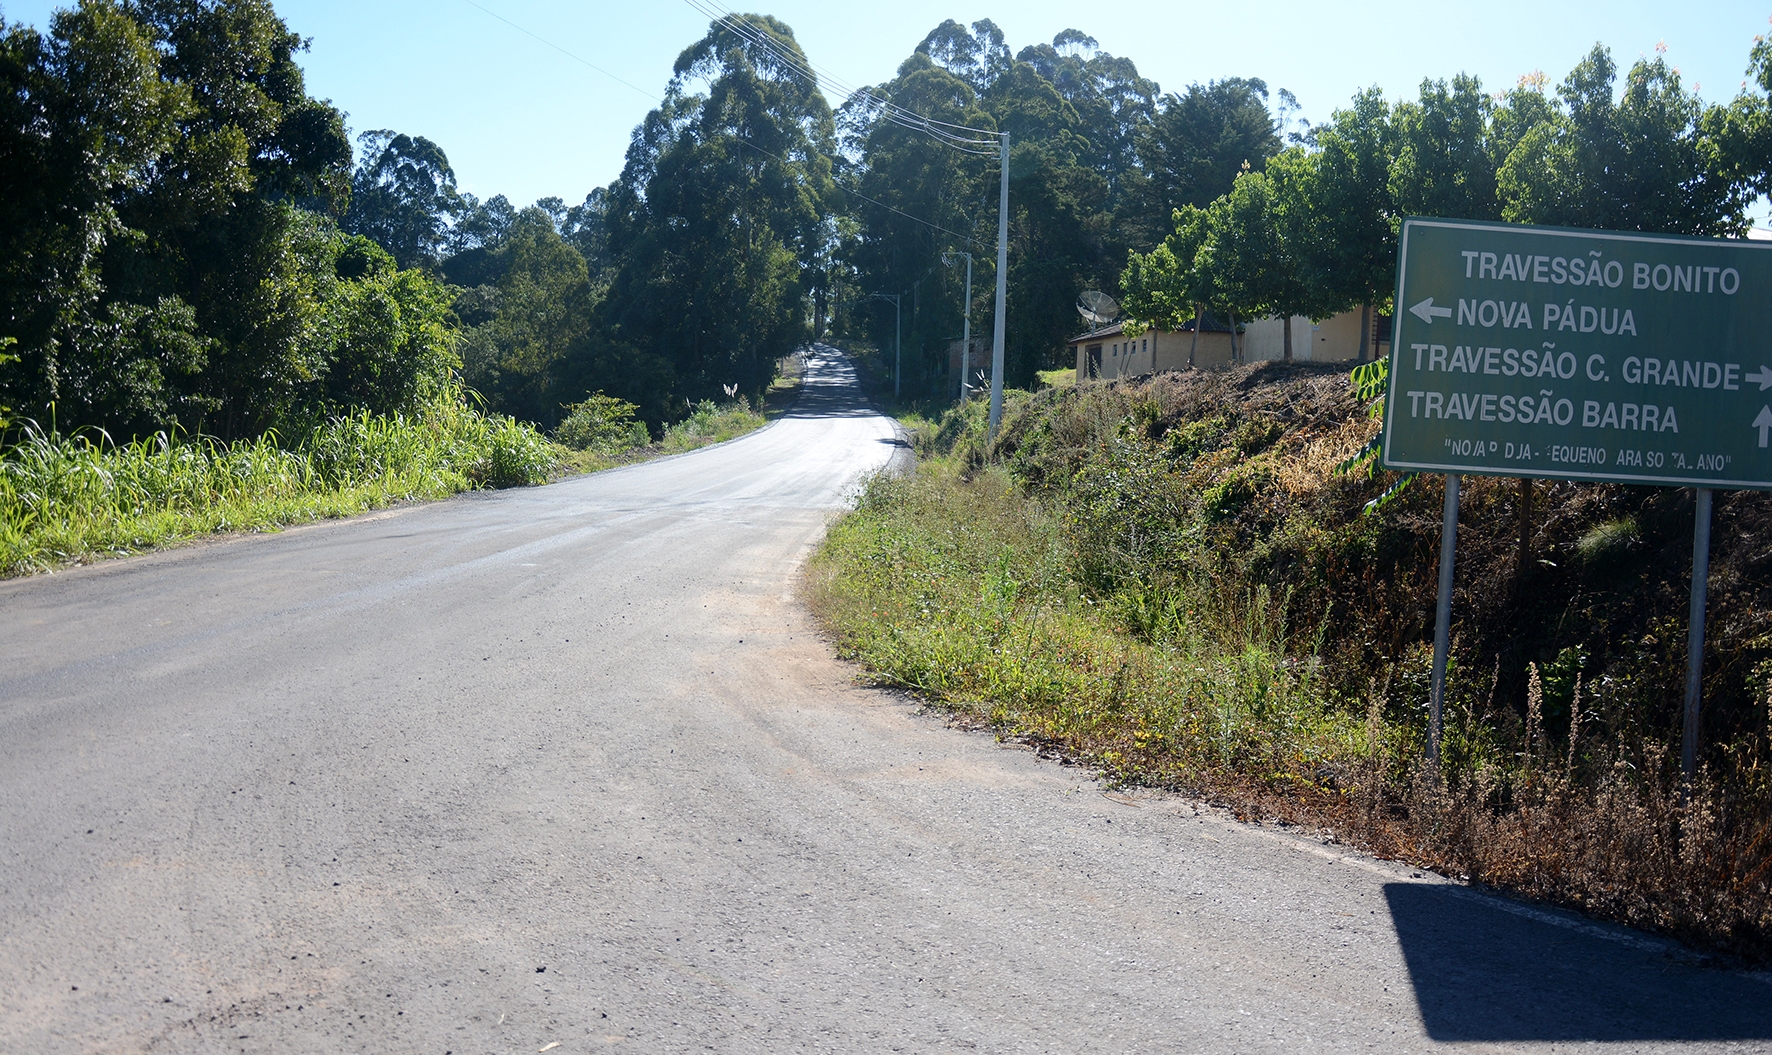 Pavimentação asfáltica na estrada do Travessão Bonito ao Barra. - Maicon Pan/ Prefeitura NP/ Divulgação